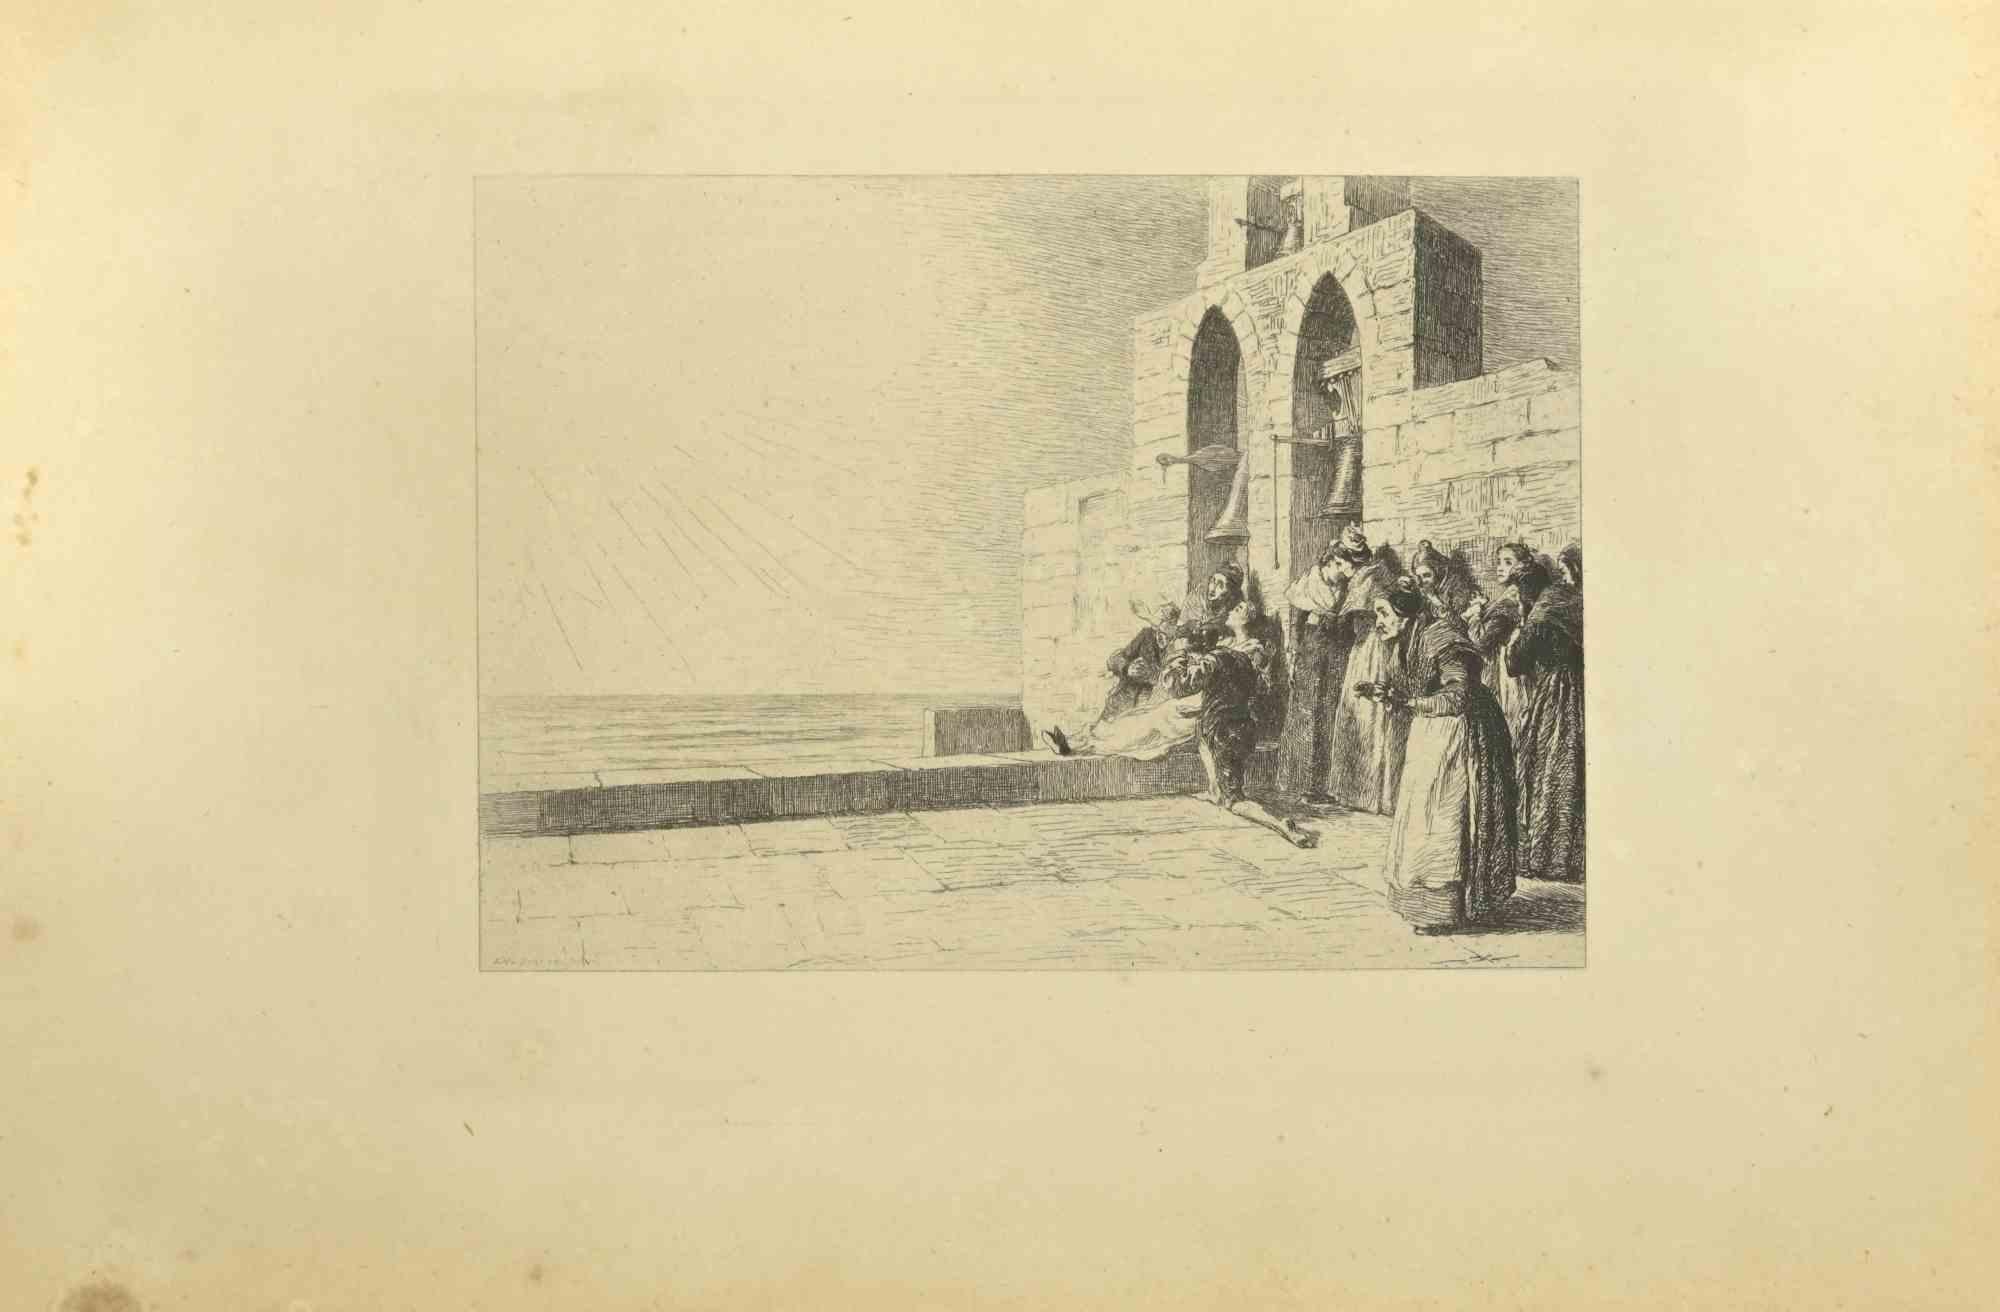 La Mort de Mireille est une eau-forte réalisée par Eugène Burnand (1850-1921) à la fin du XIXe siècle.

Signé sur la plaque.

Bon état avec des rousseurs.
 
L'œuvre est réalisée par des traits courts et habiles, une scène admirable créée par une